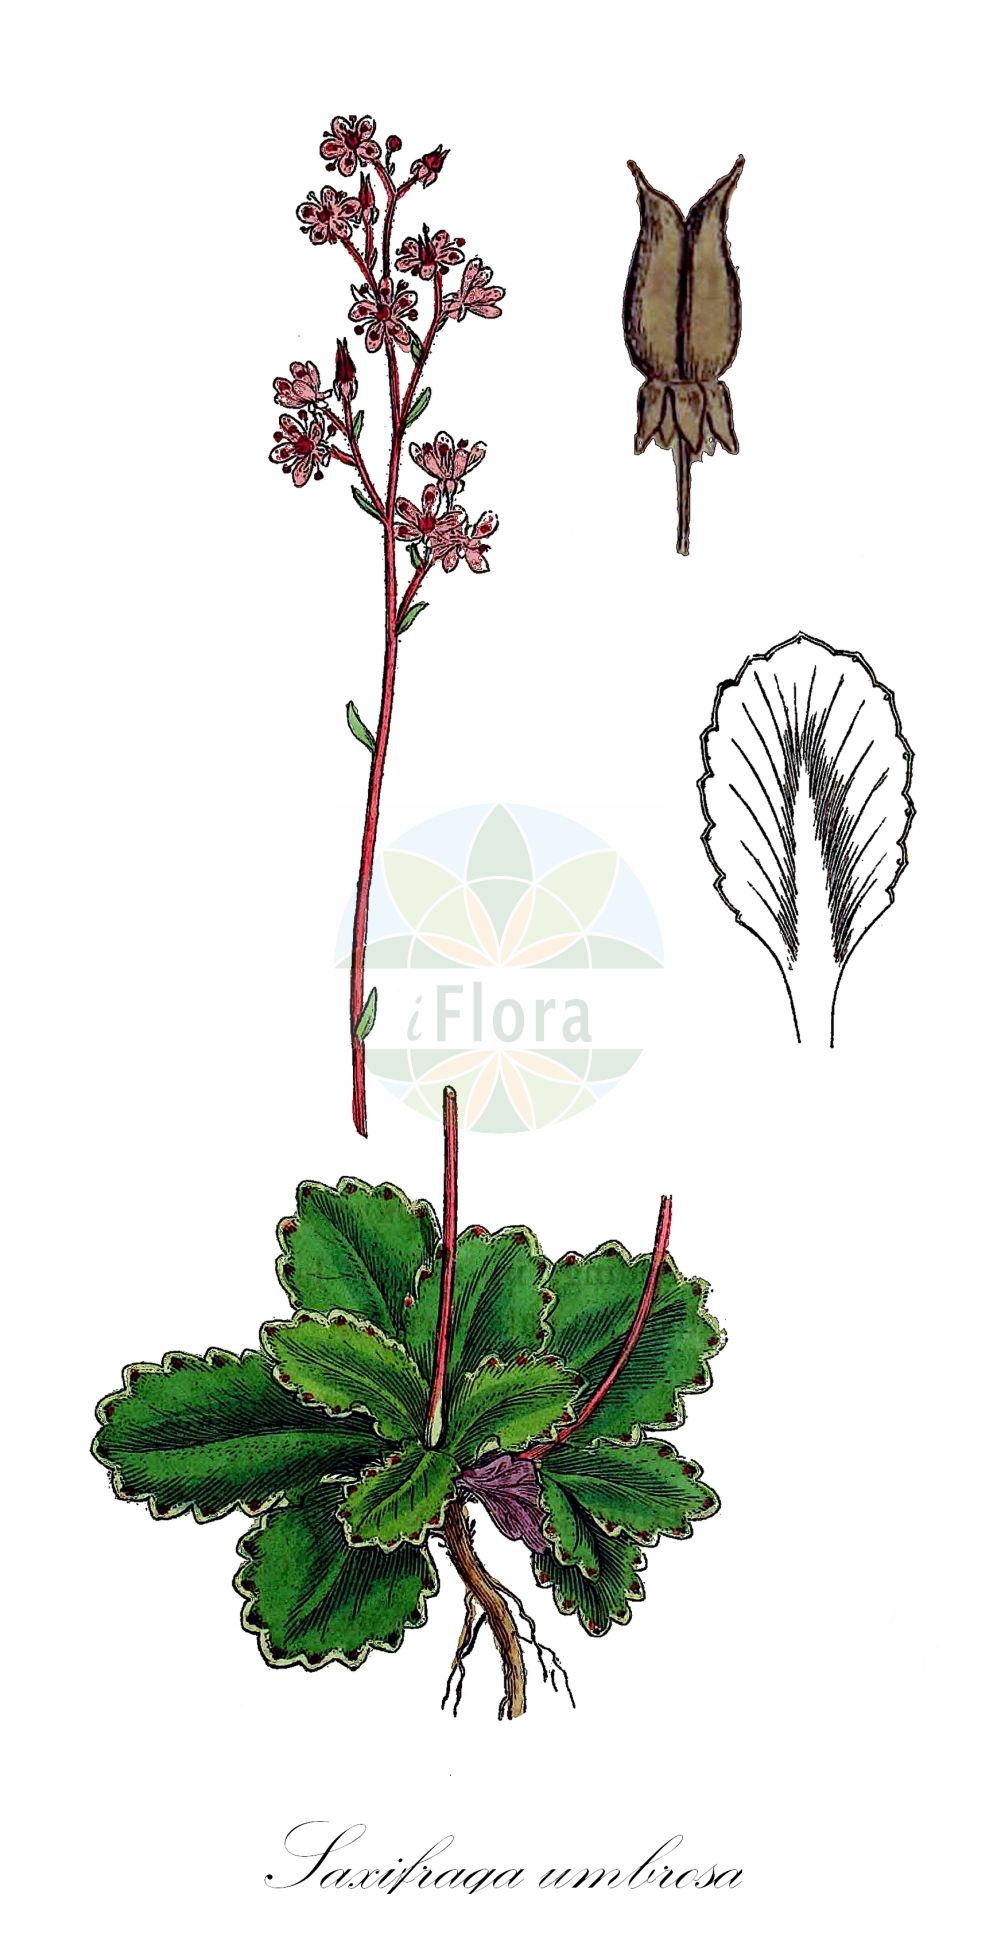 Historische Abbildung von Saxifraga umbrosa (Pyrenean Saxifrage). Das Bild zeigt Blatt, Bluete, Frucht und Same. ---- Historical Drawing of Saxifraga umbrosa (Pyrenean Saxifrage). The image is showing leaf, flower, fruit and seed.(Saxifraga umbrosa,Pyrenean Saxifrage,Saxifraga umbrosa,Saxifraga,Steinbrech,Saxifrage,Saxifragaceae,Steinbrechgewächse,Saxifrage family,Blatt,Bluete,Frucht,Same,leaf,flower,fruit,seed,Sowerby (1790-1813))